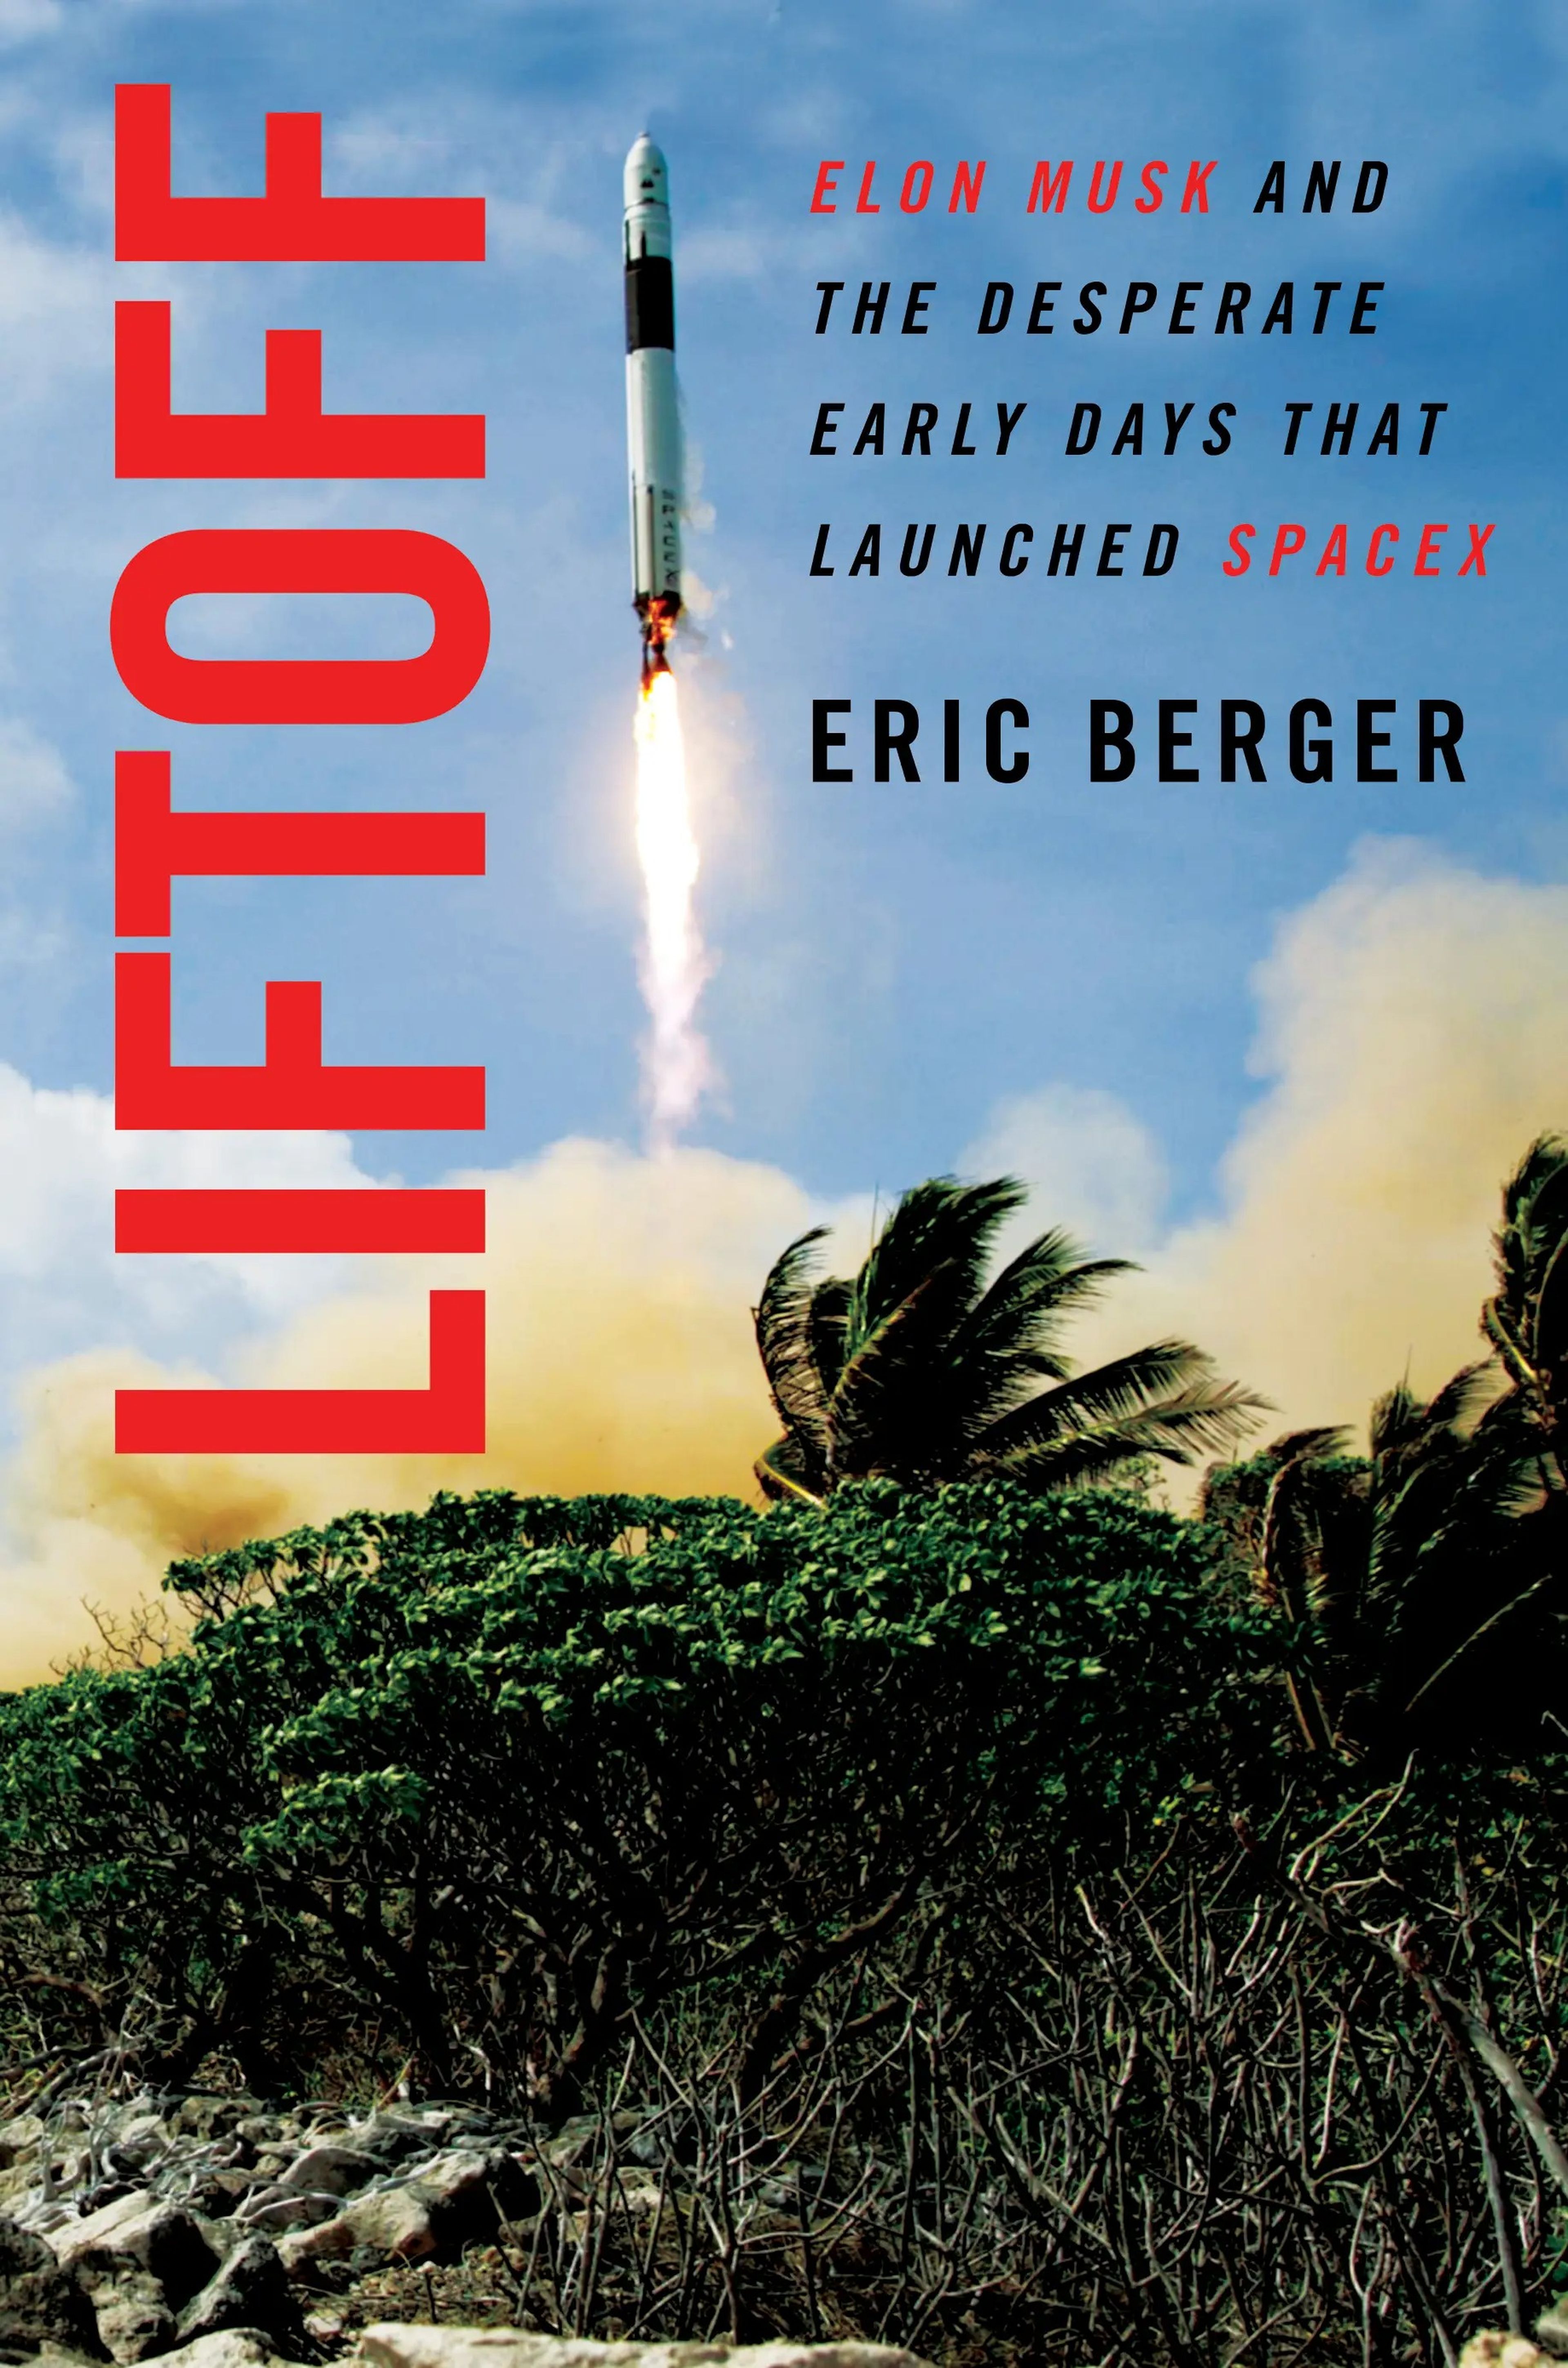 Portada del libro 'Liftoff' de Eric Berger, sobre los inicios de SpaceX